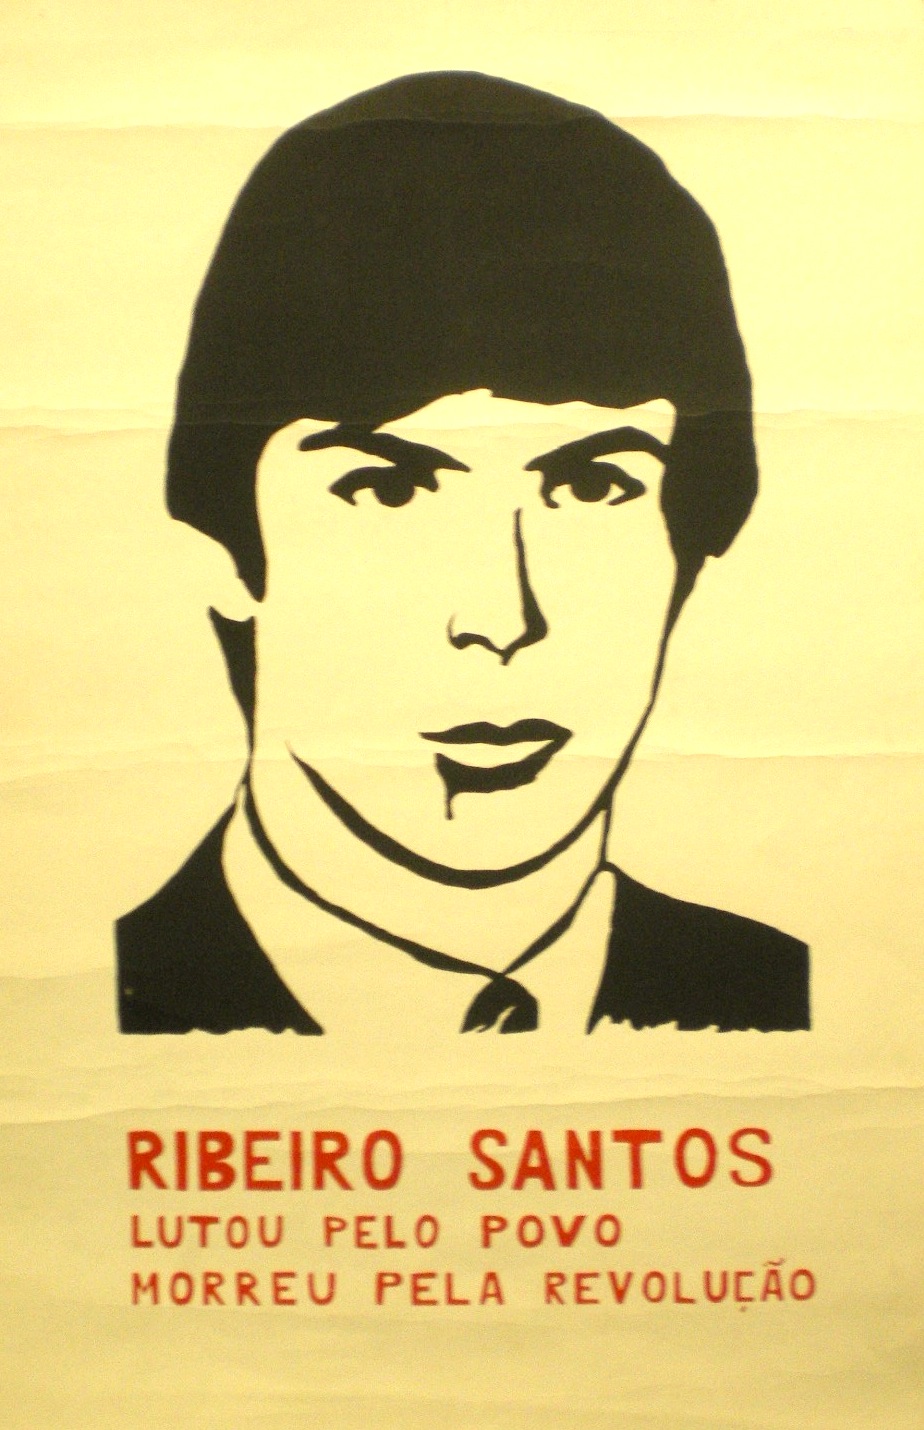 Ribeiro Santos – Lutou pelo povo morreu pela revolução